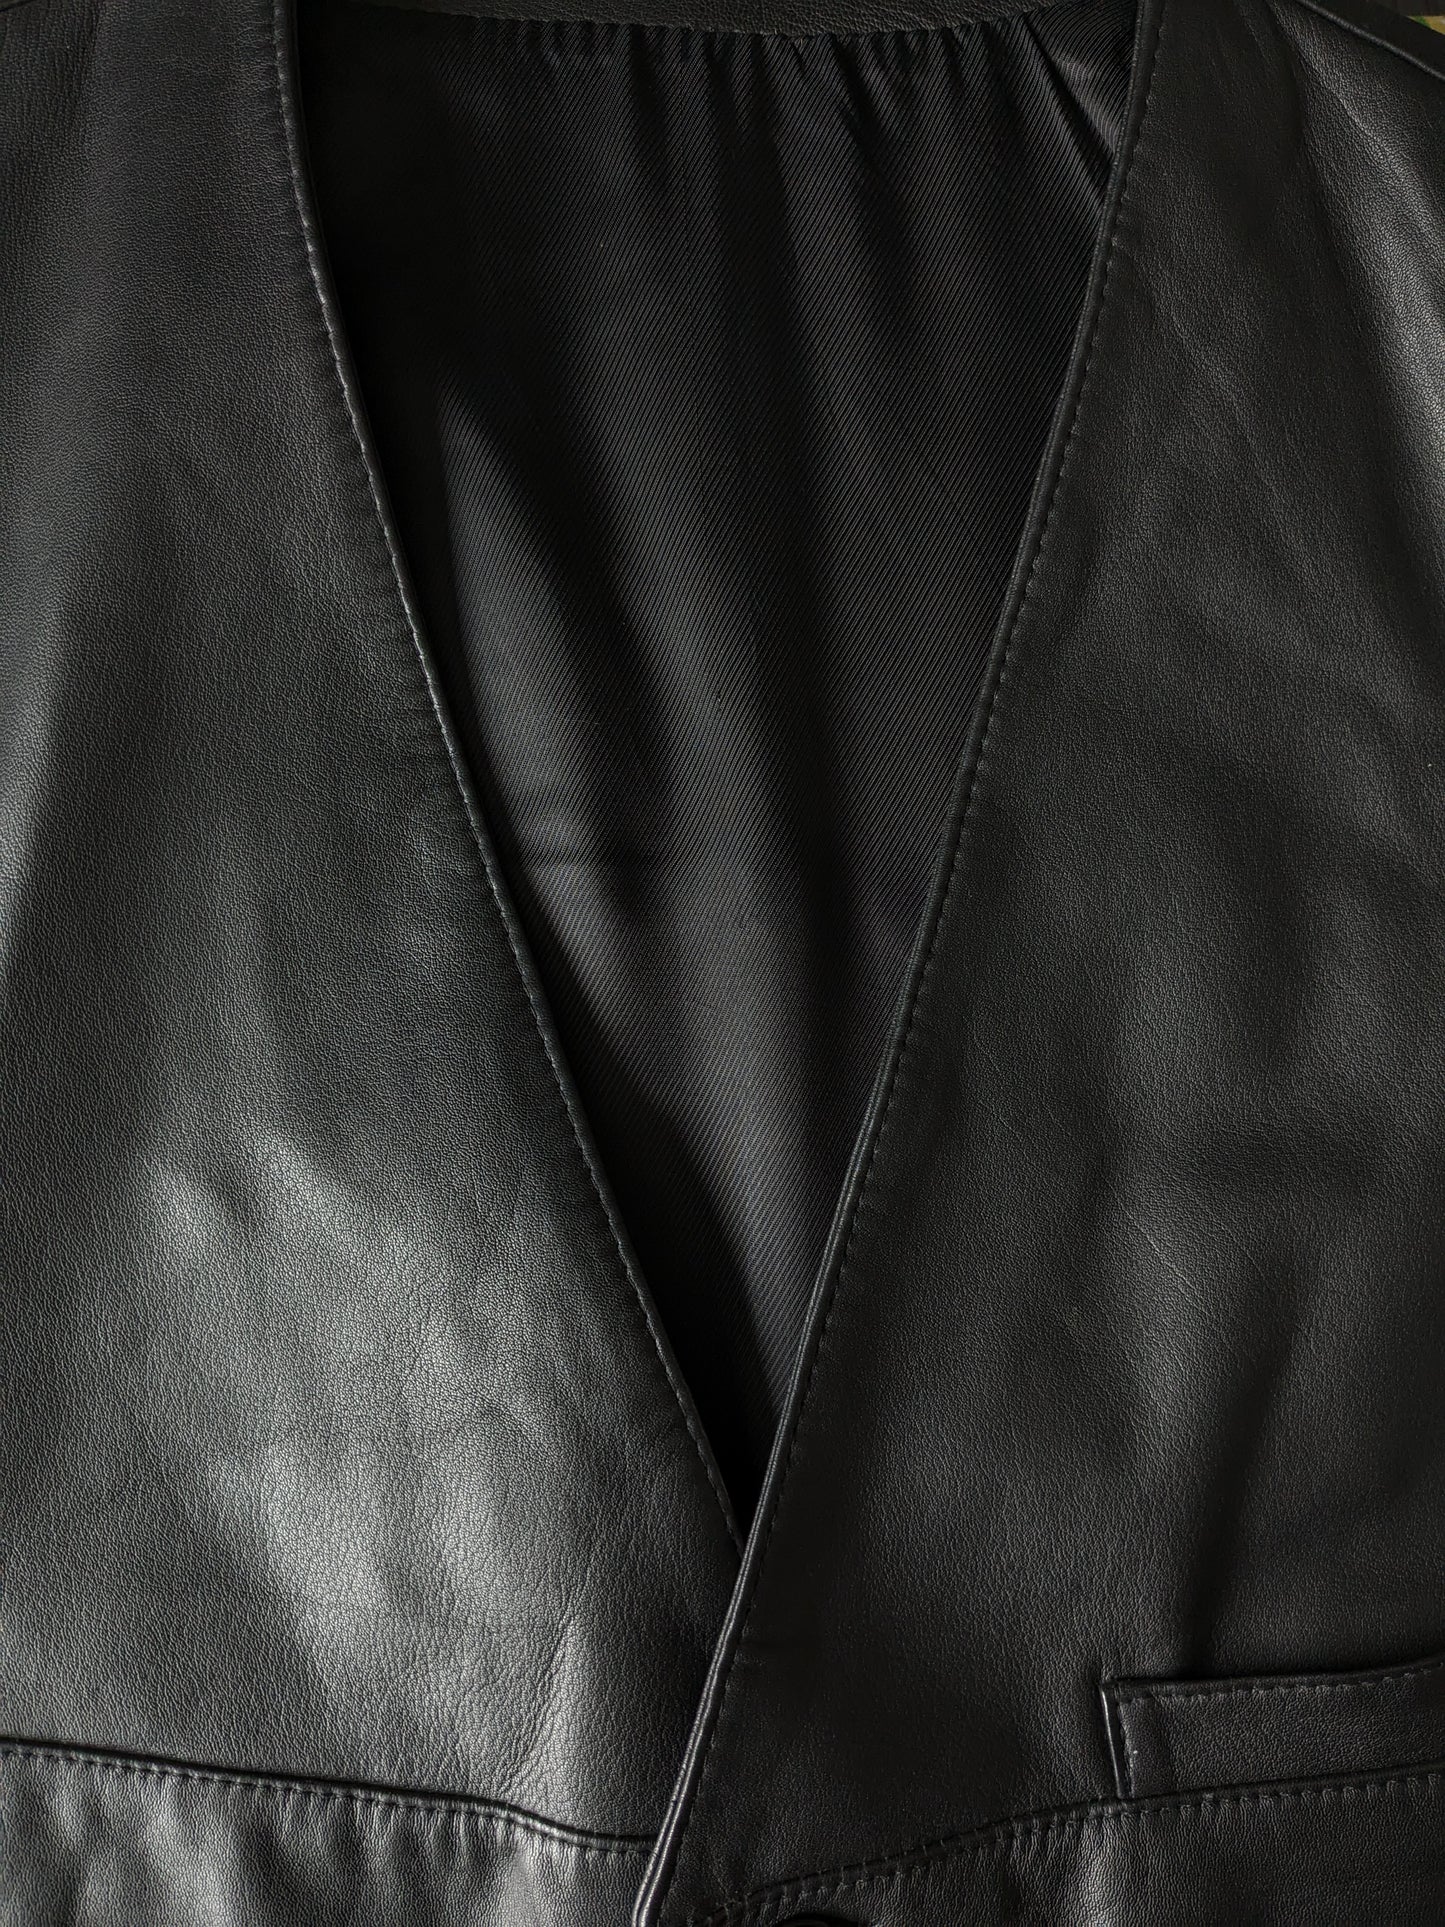 Gilet en cuir Striwa à double faces avec 2 poches intérieures. Noir. Taille L. # 319